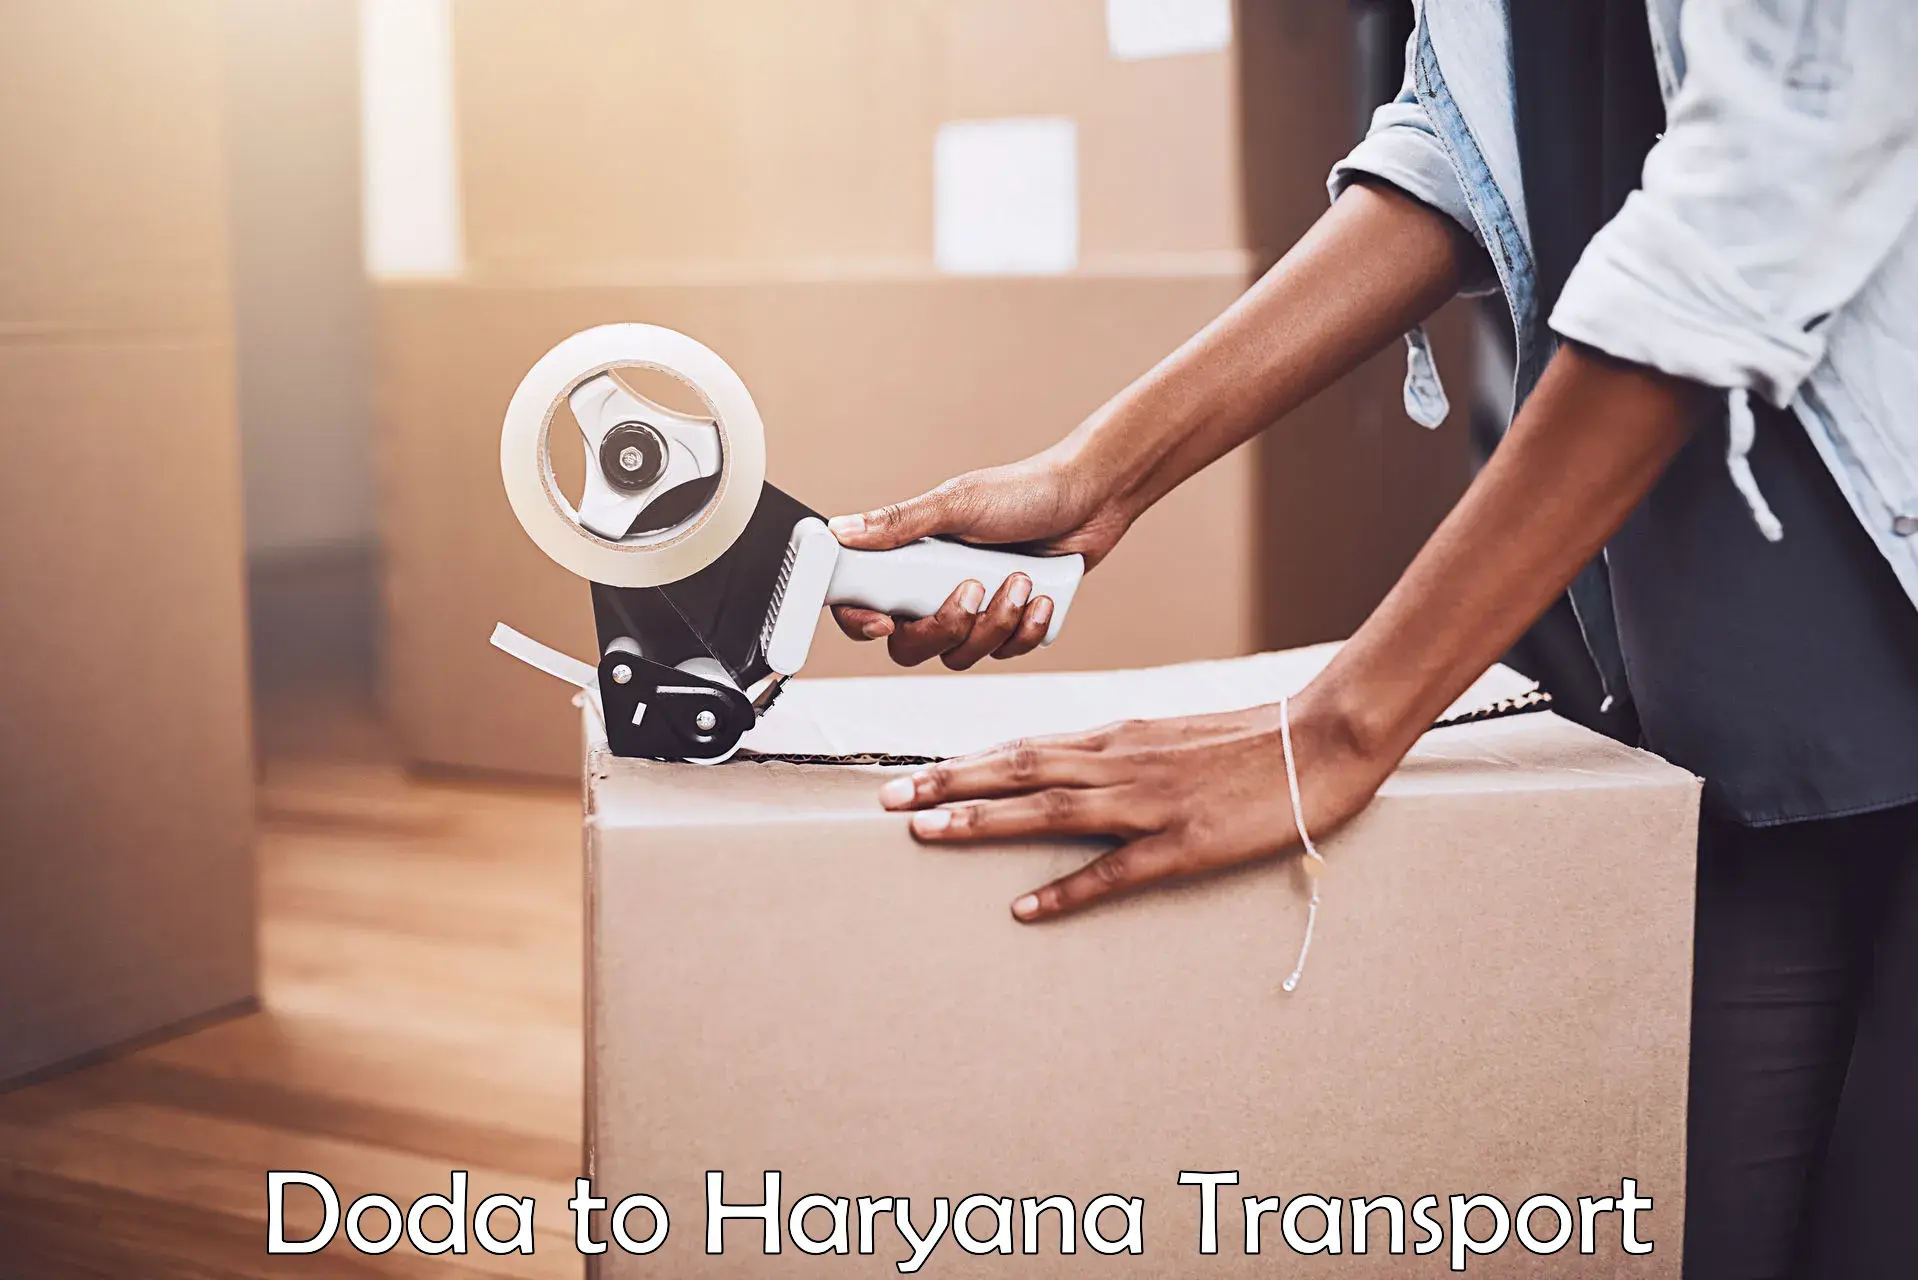 Cycle transportation service Doda to Haryana